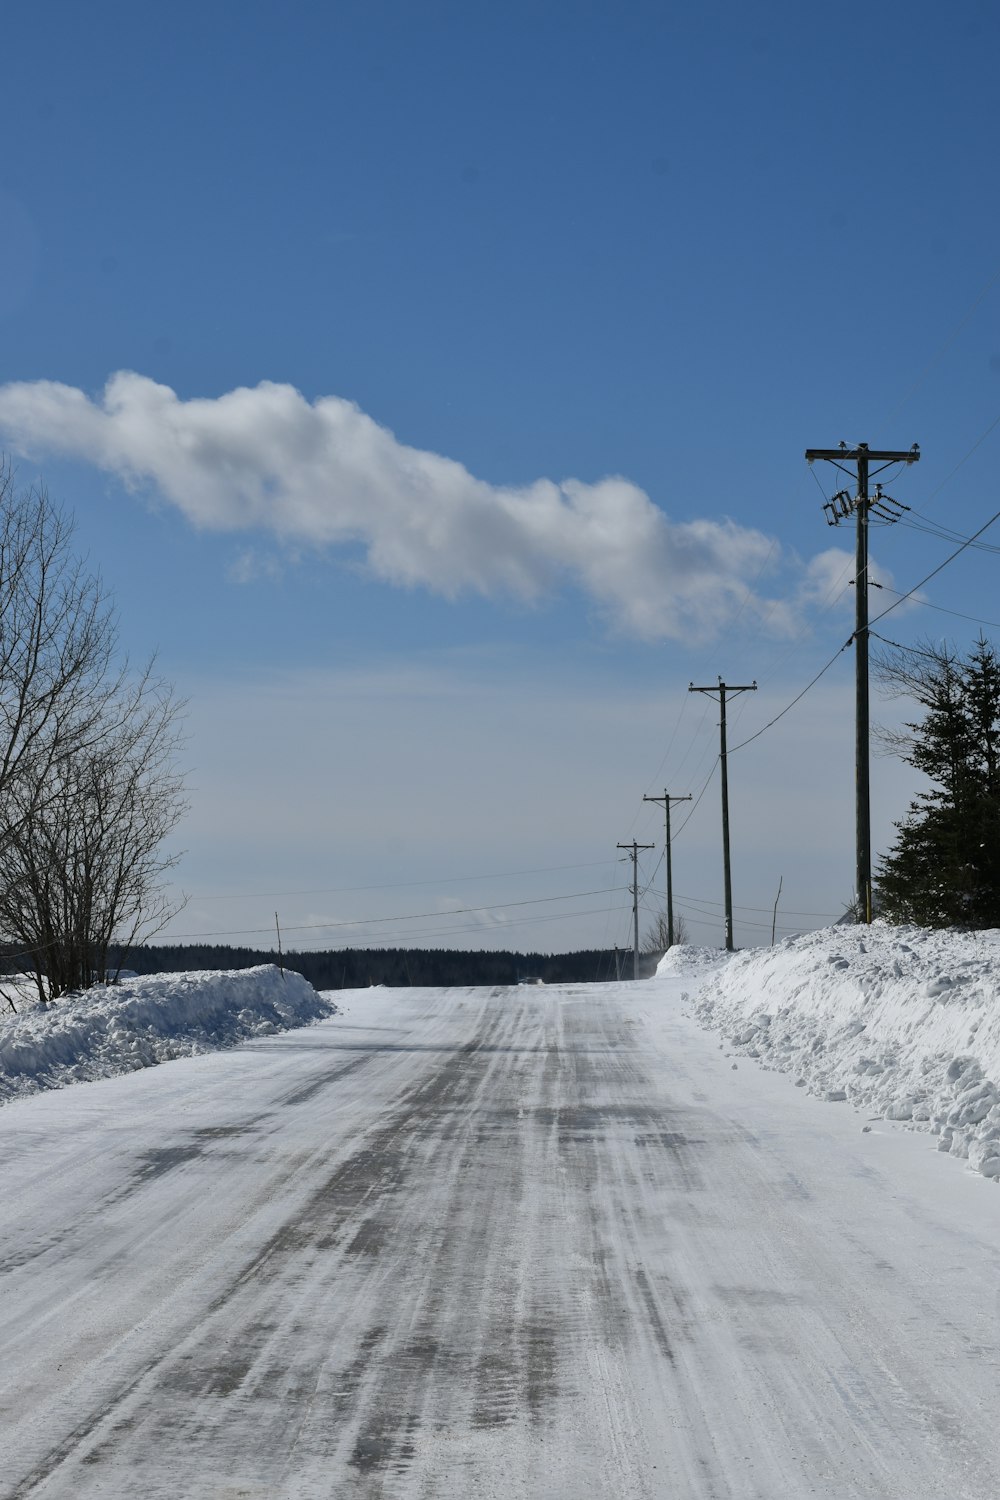 eine schneebedeckte Straße mit Stromleitungen und Telefonmasten